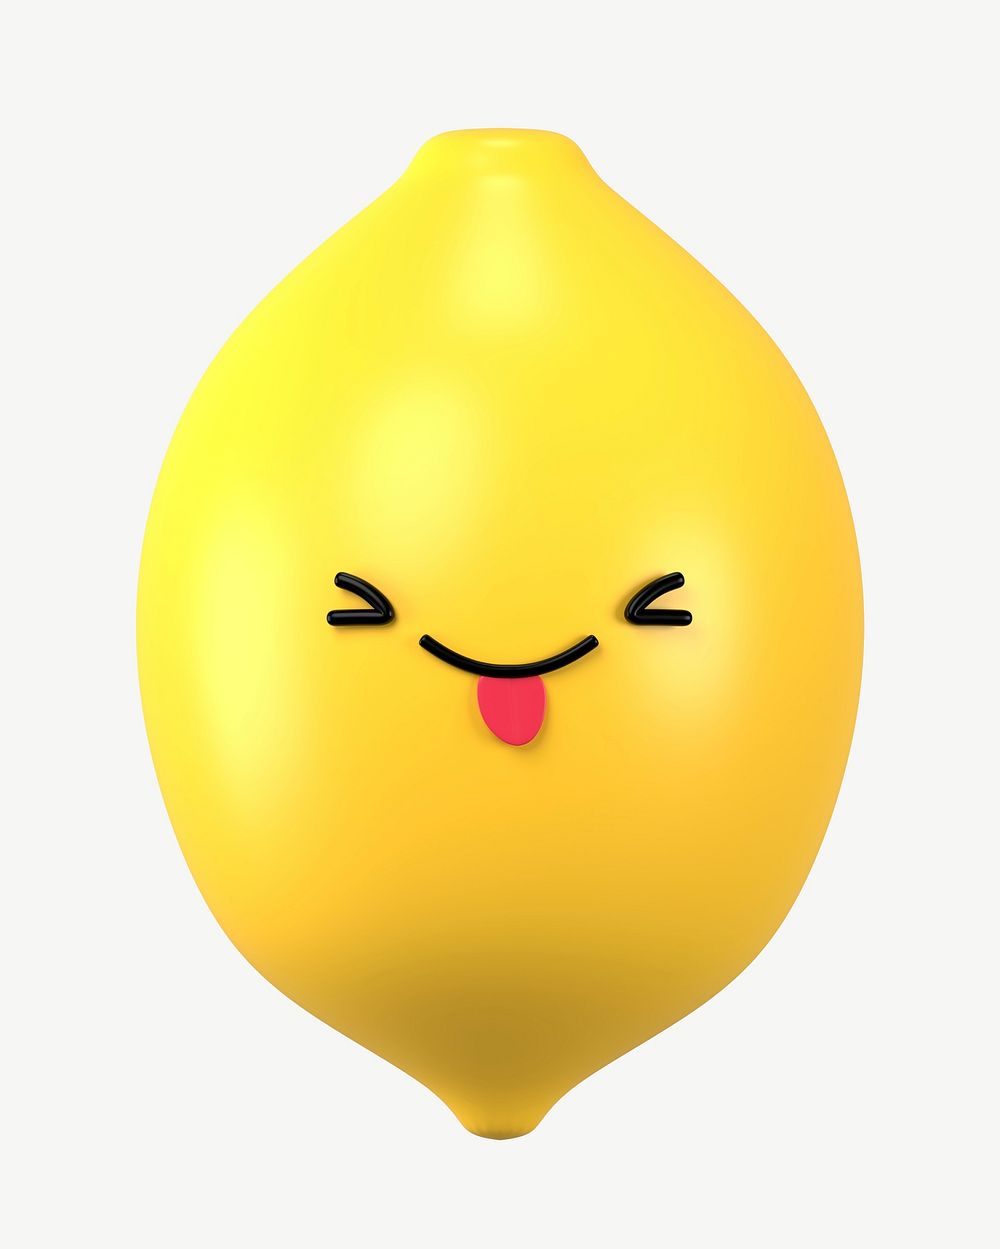 3D playful face lemon, emoticon | Premium PSD - rawpixel